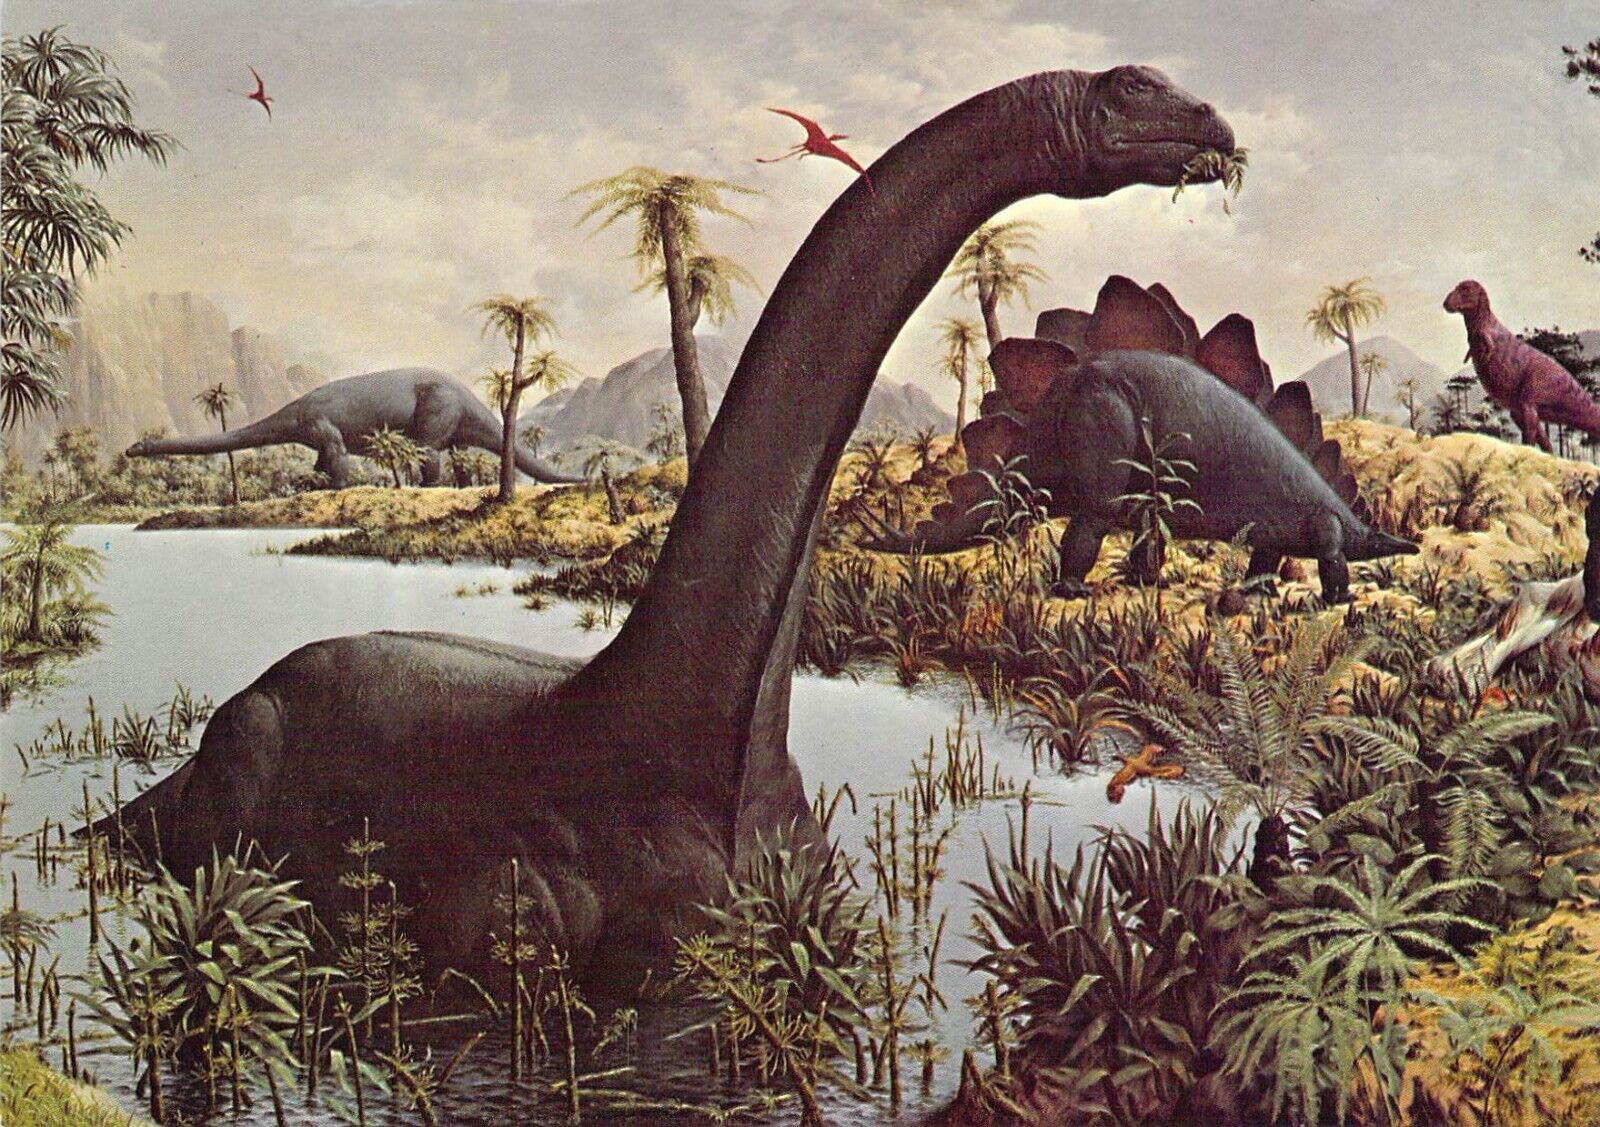 1977 Peabody #5  Museum Reptiles Mural 3 Dinosaurs 4x6 postcard L157